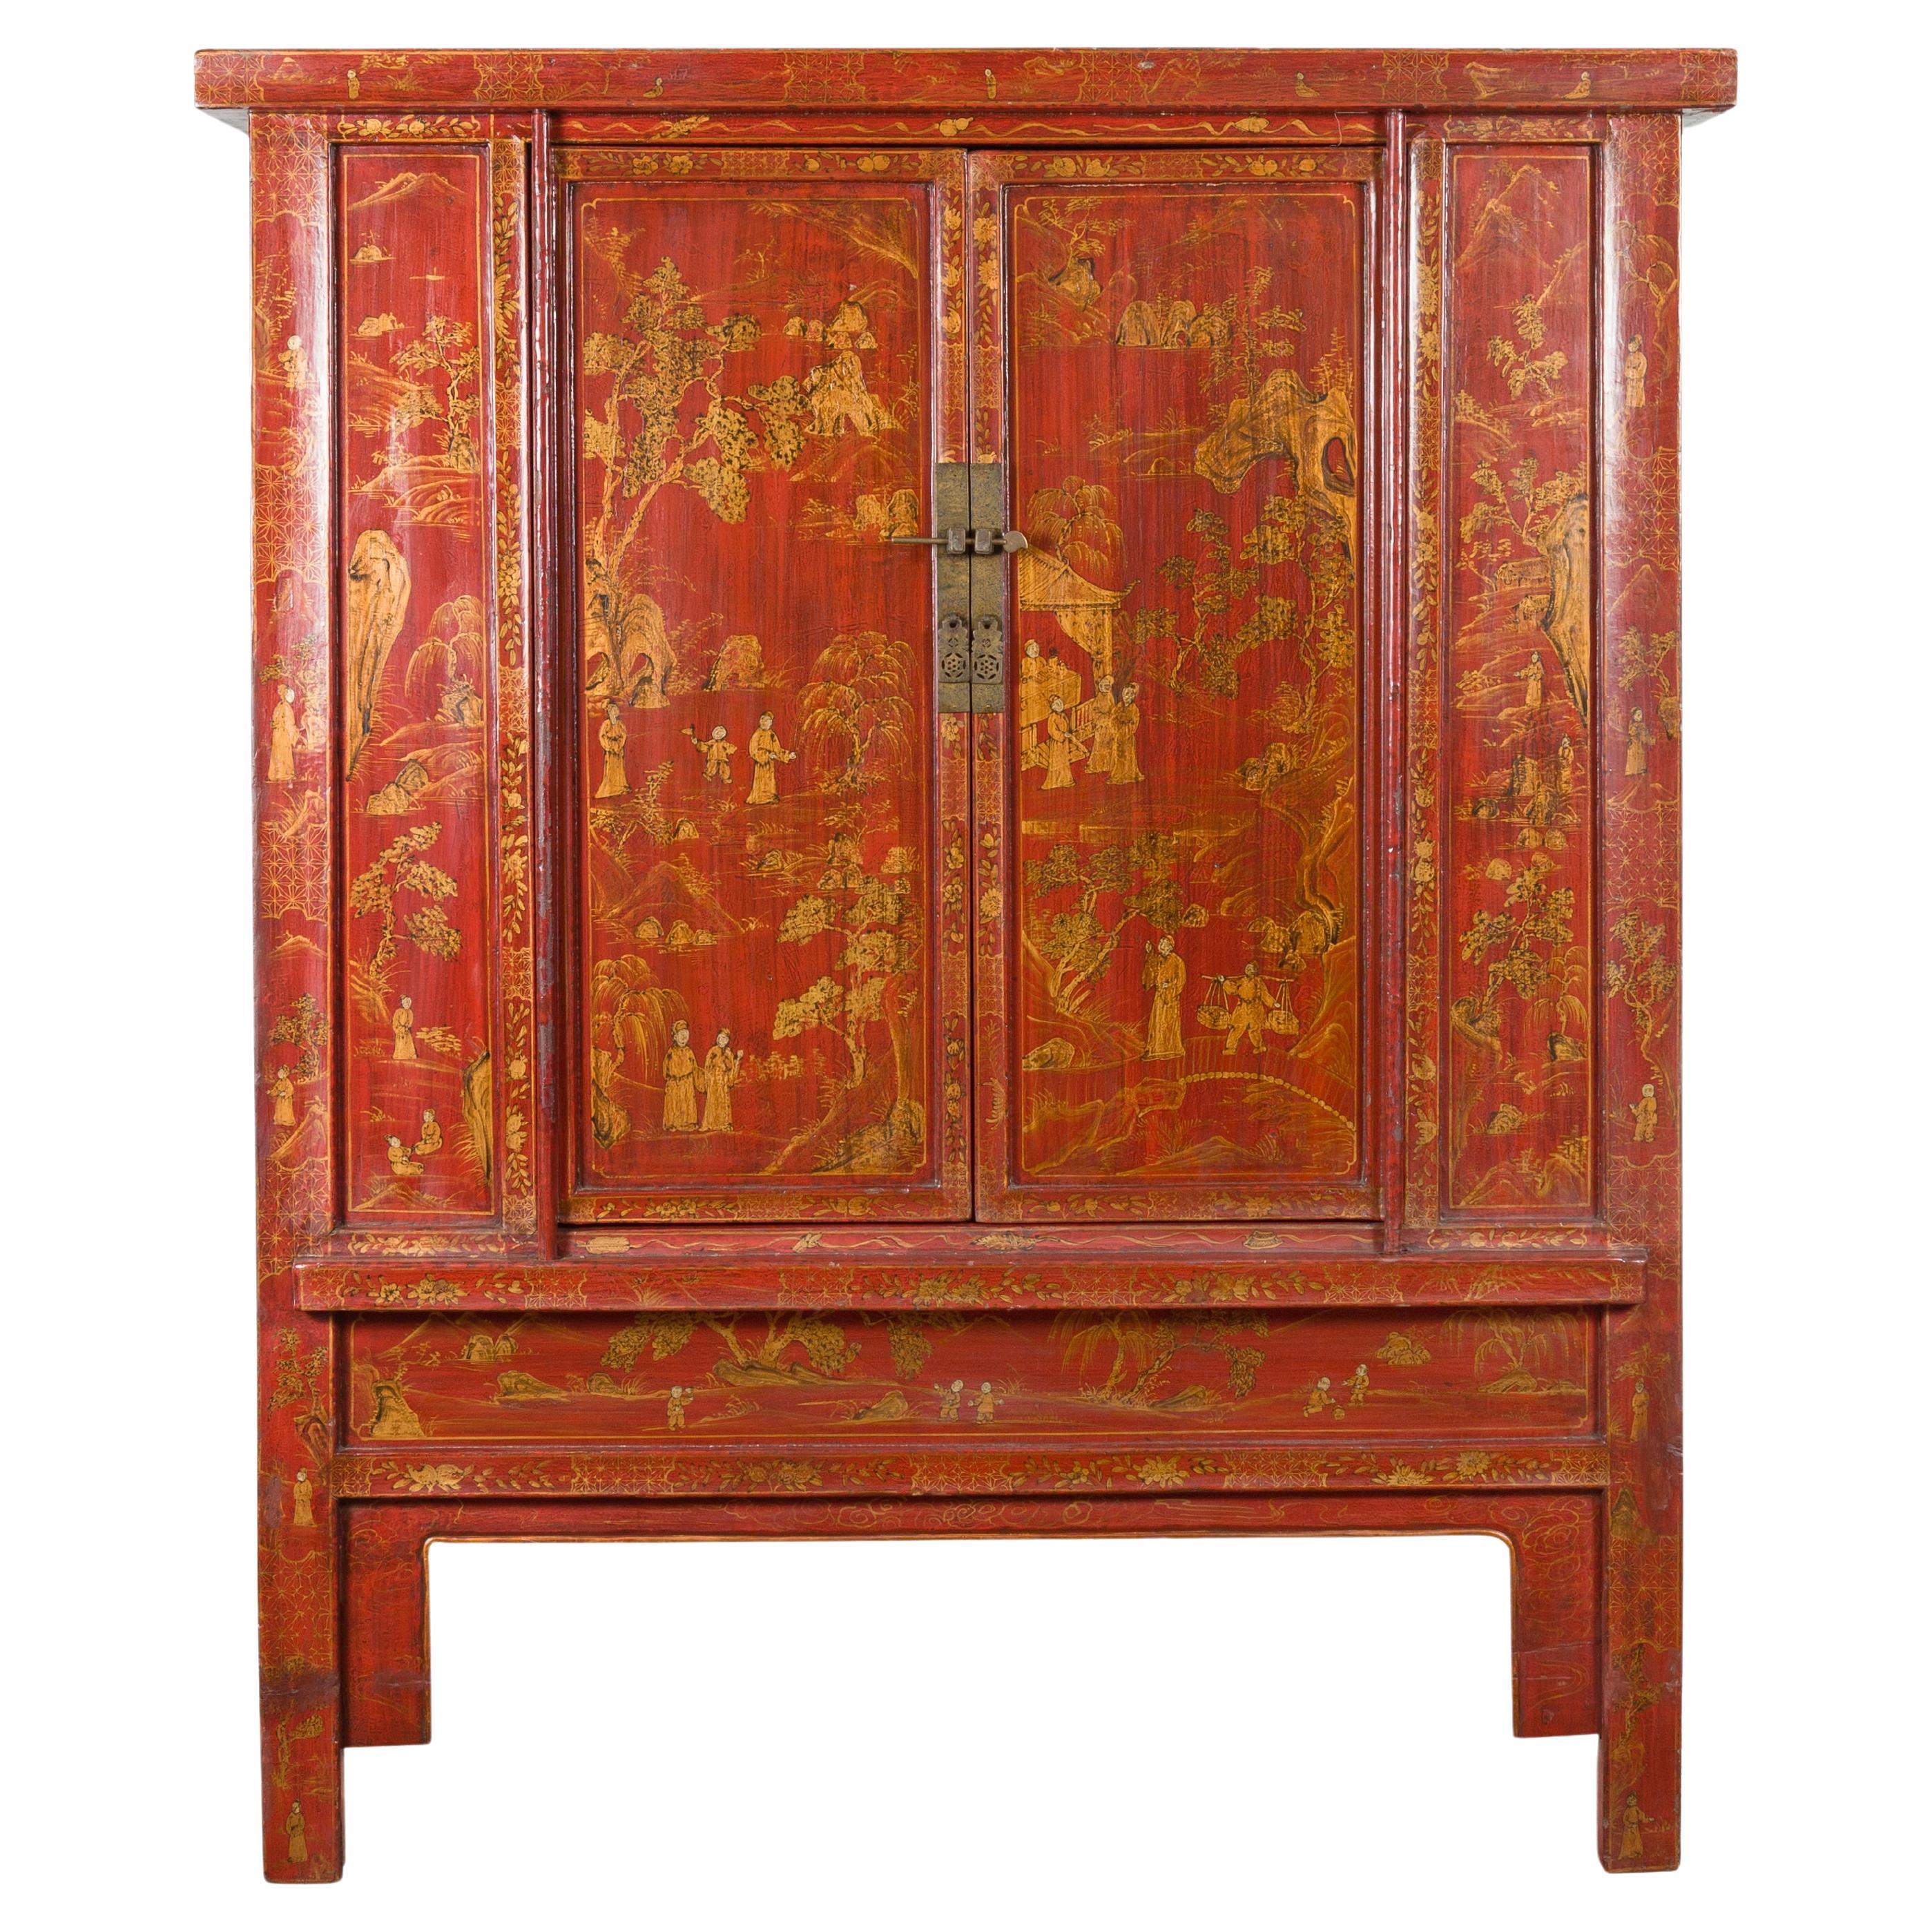 Grande armoire en laque rouge de la dynastie chinoise Qing du 19e siècle avec décor doré